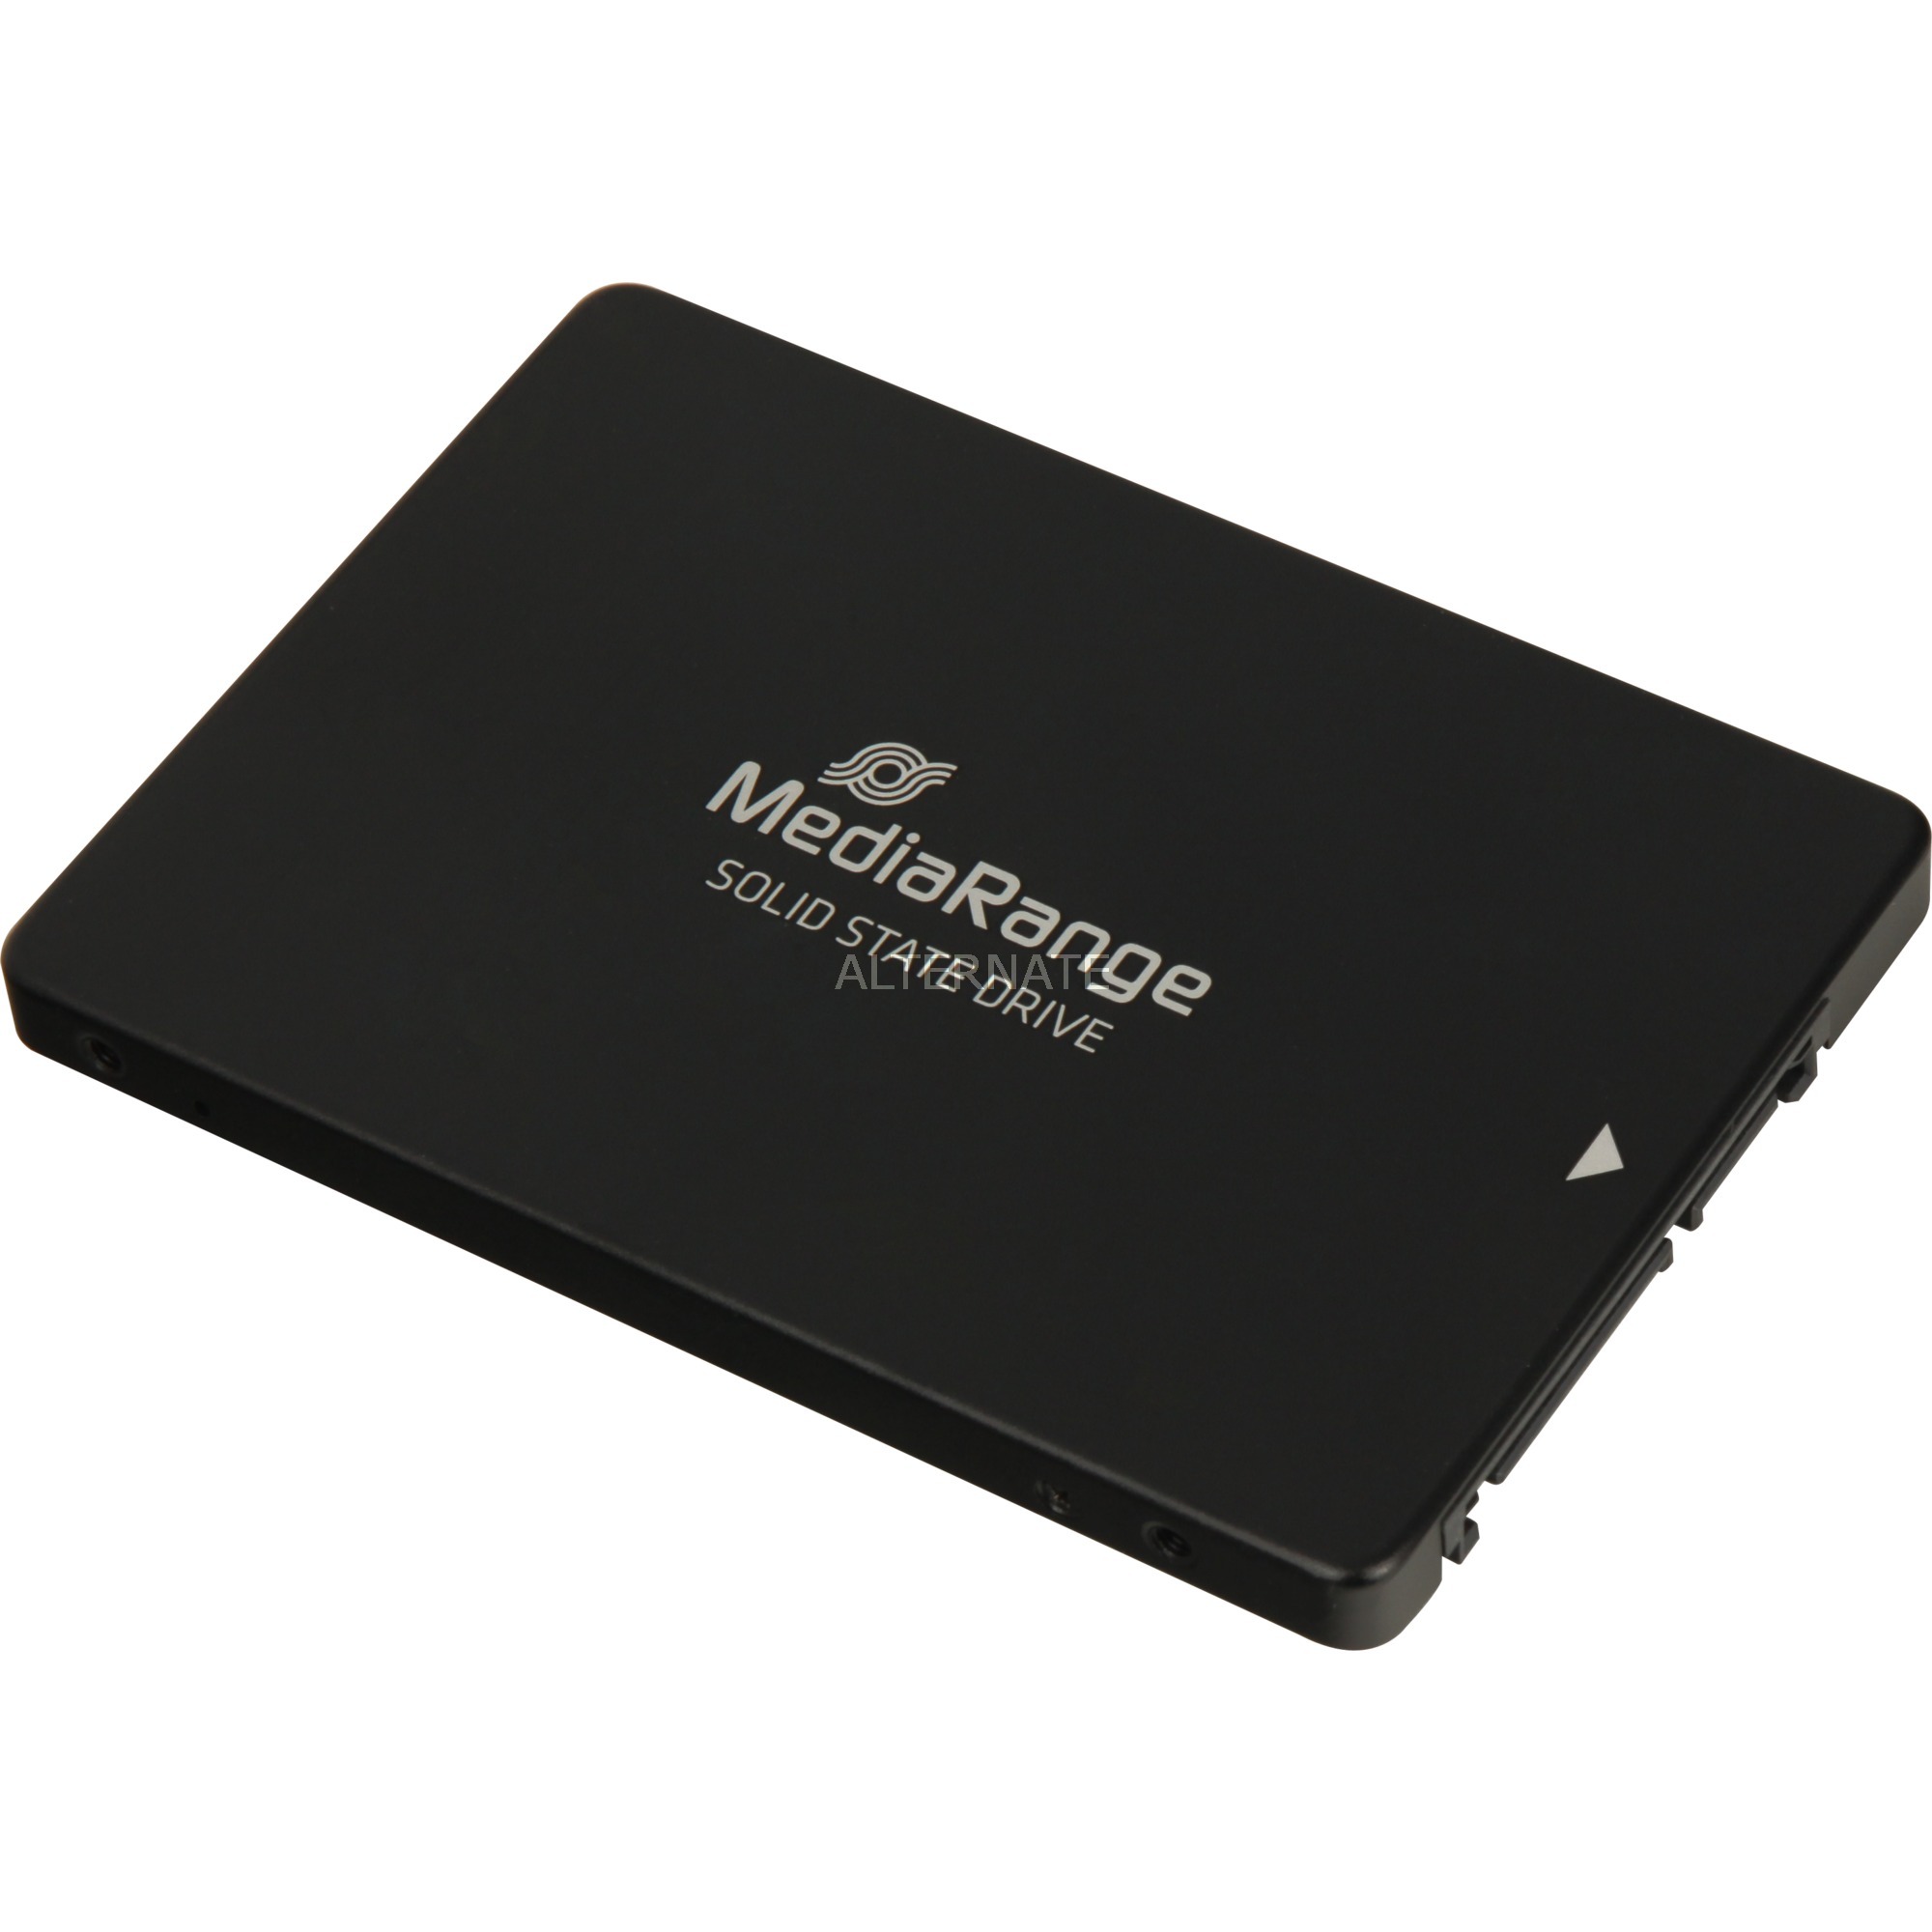 MR1001 urządzenie SSD 120 GB druga generacja szeregowej magistrali komputerowej (serial ATA II), Serial ATA III 2.5", Dysk SSD